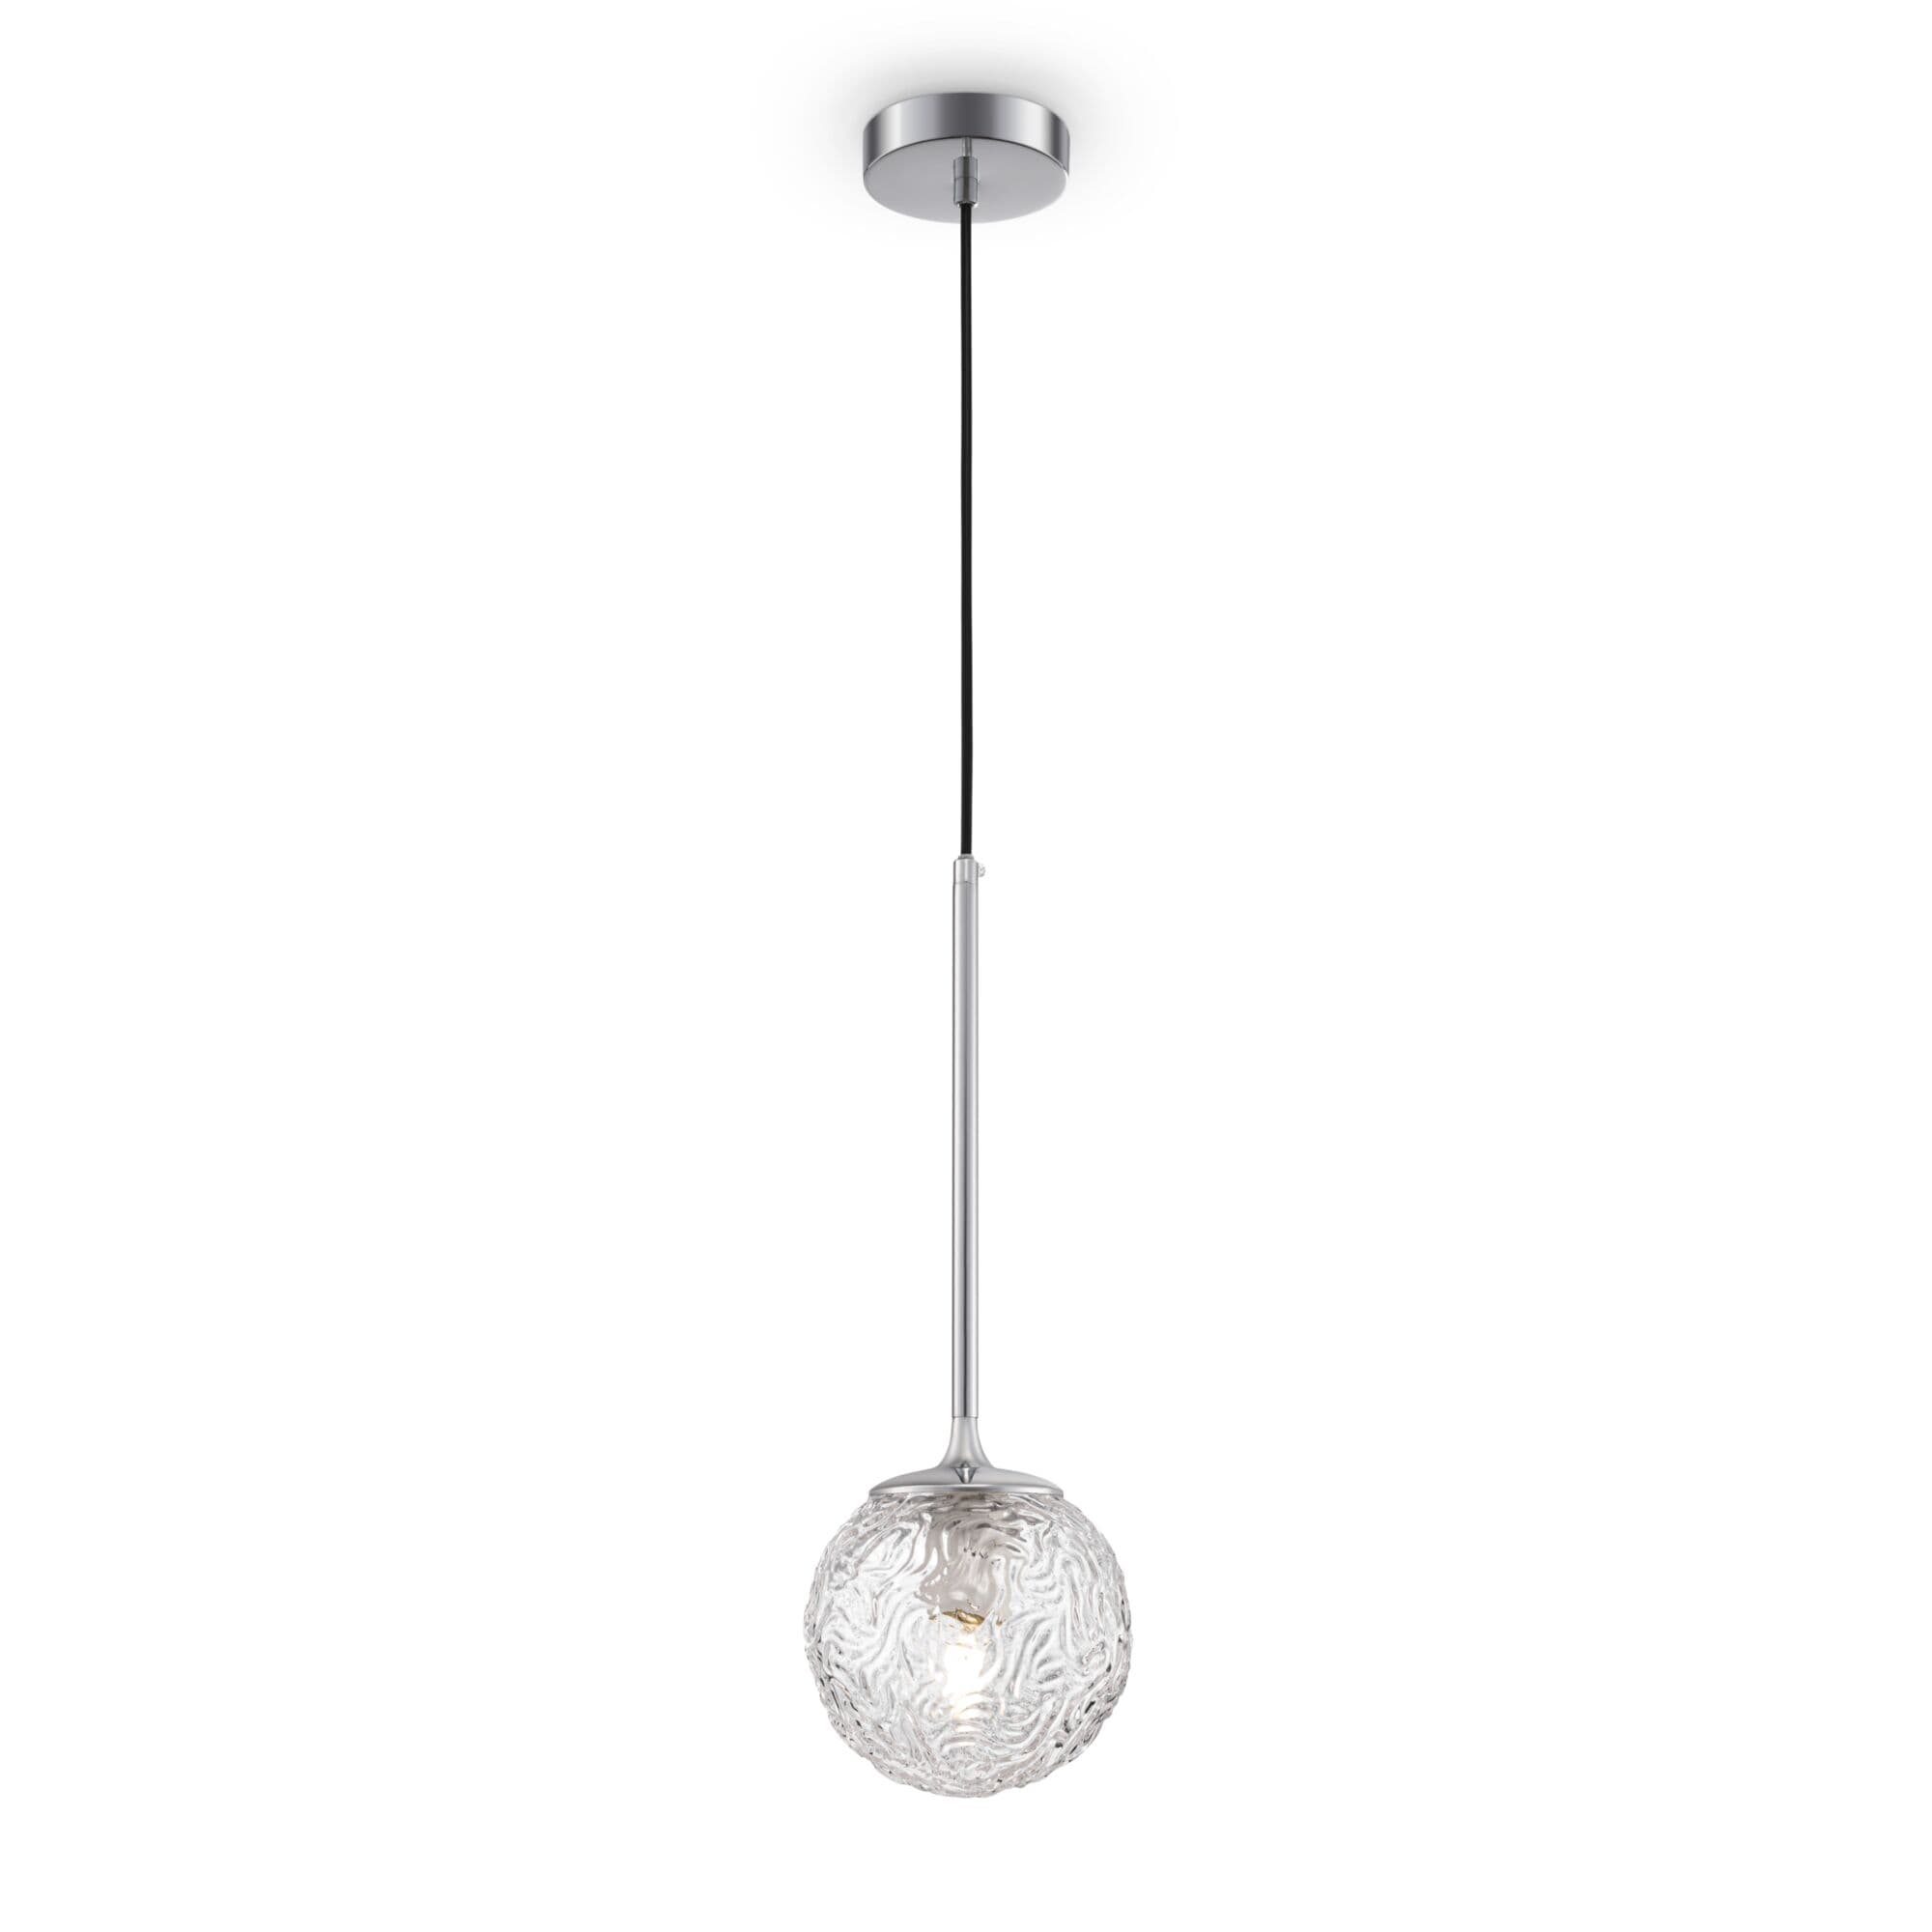 Купить Подвесной светильник Ligero в интернет-магазине roooms.ru